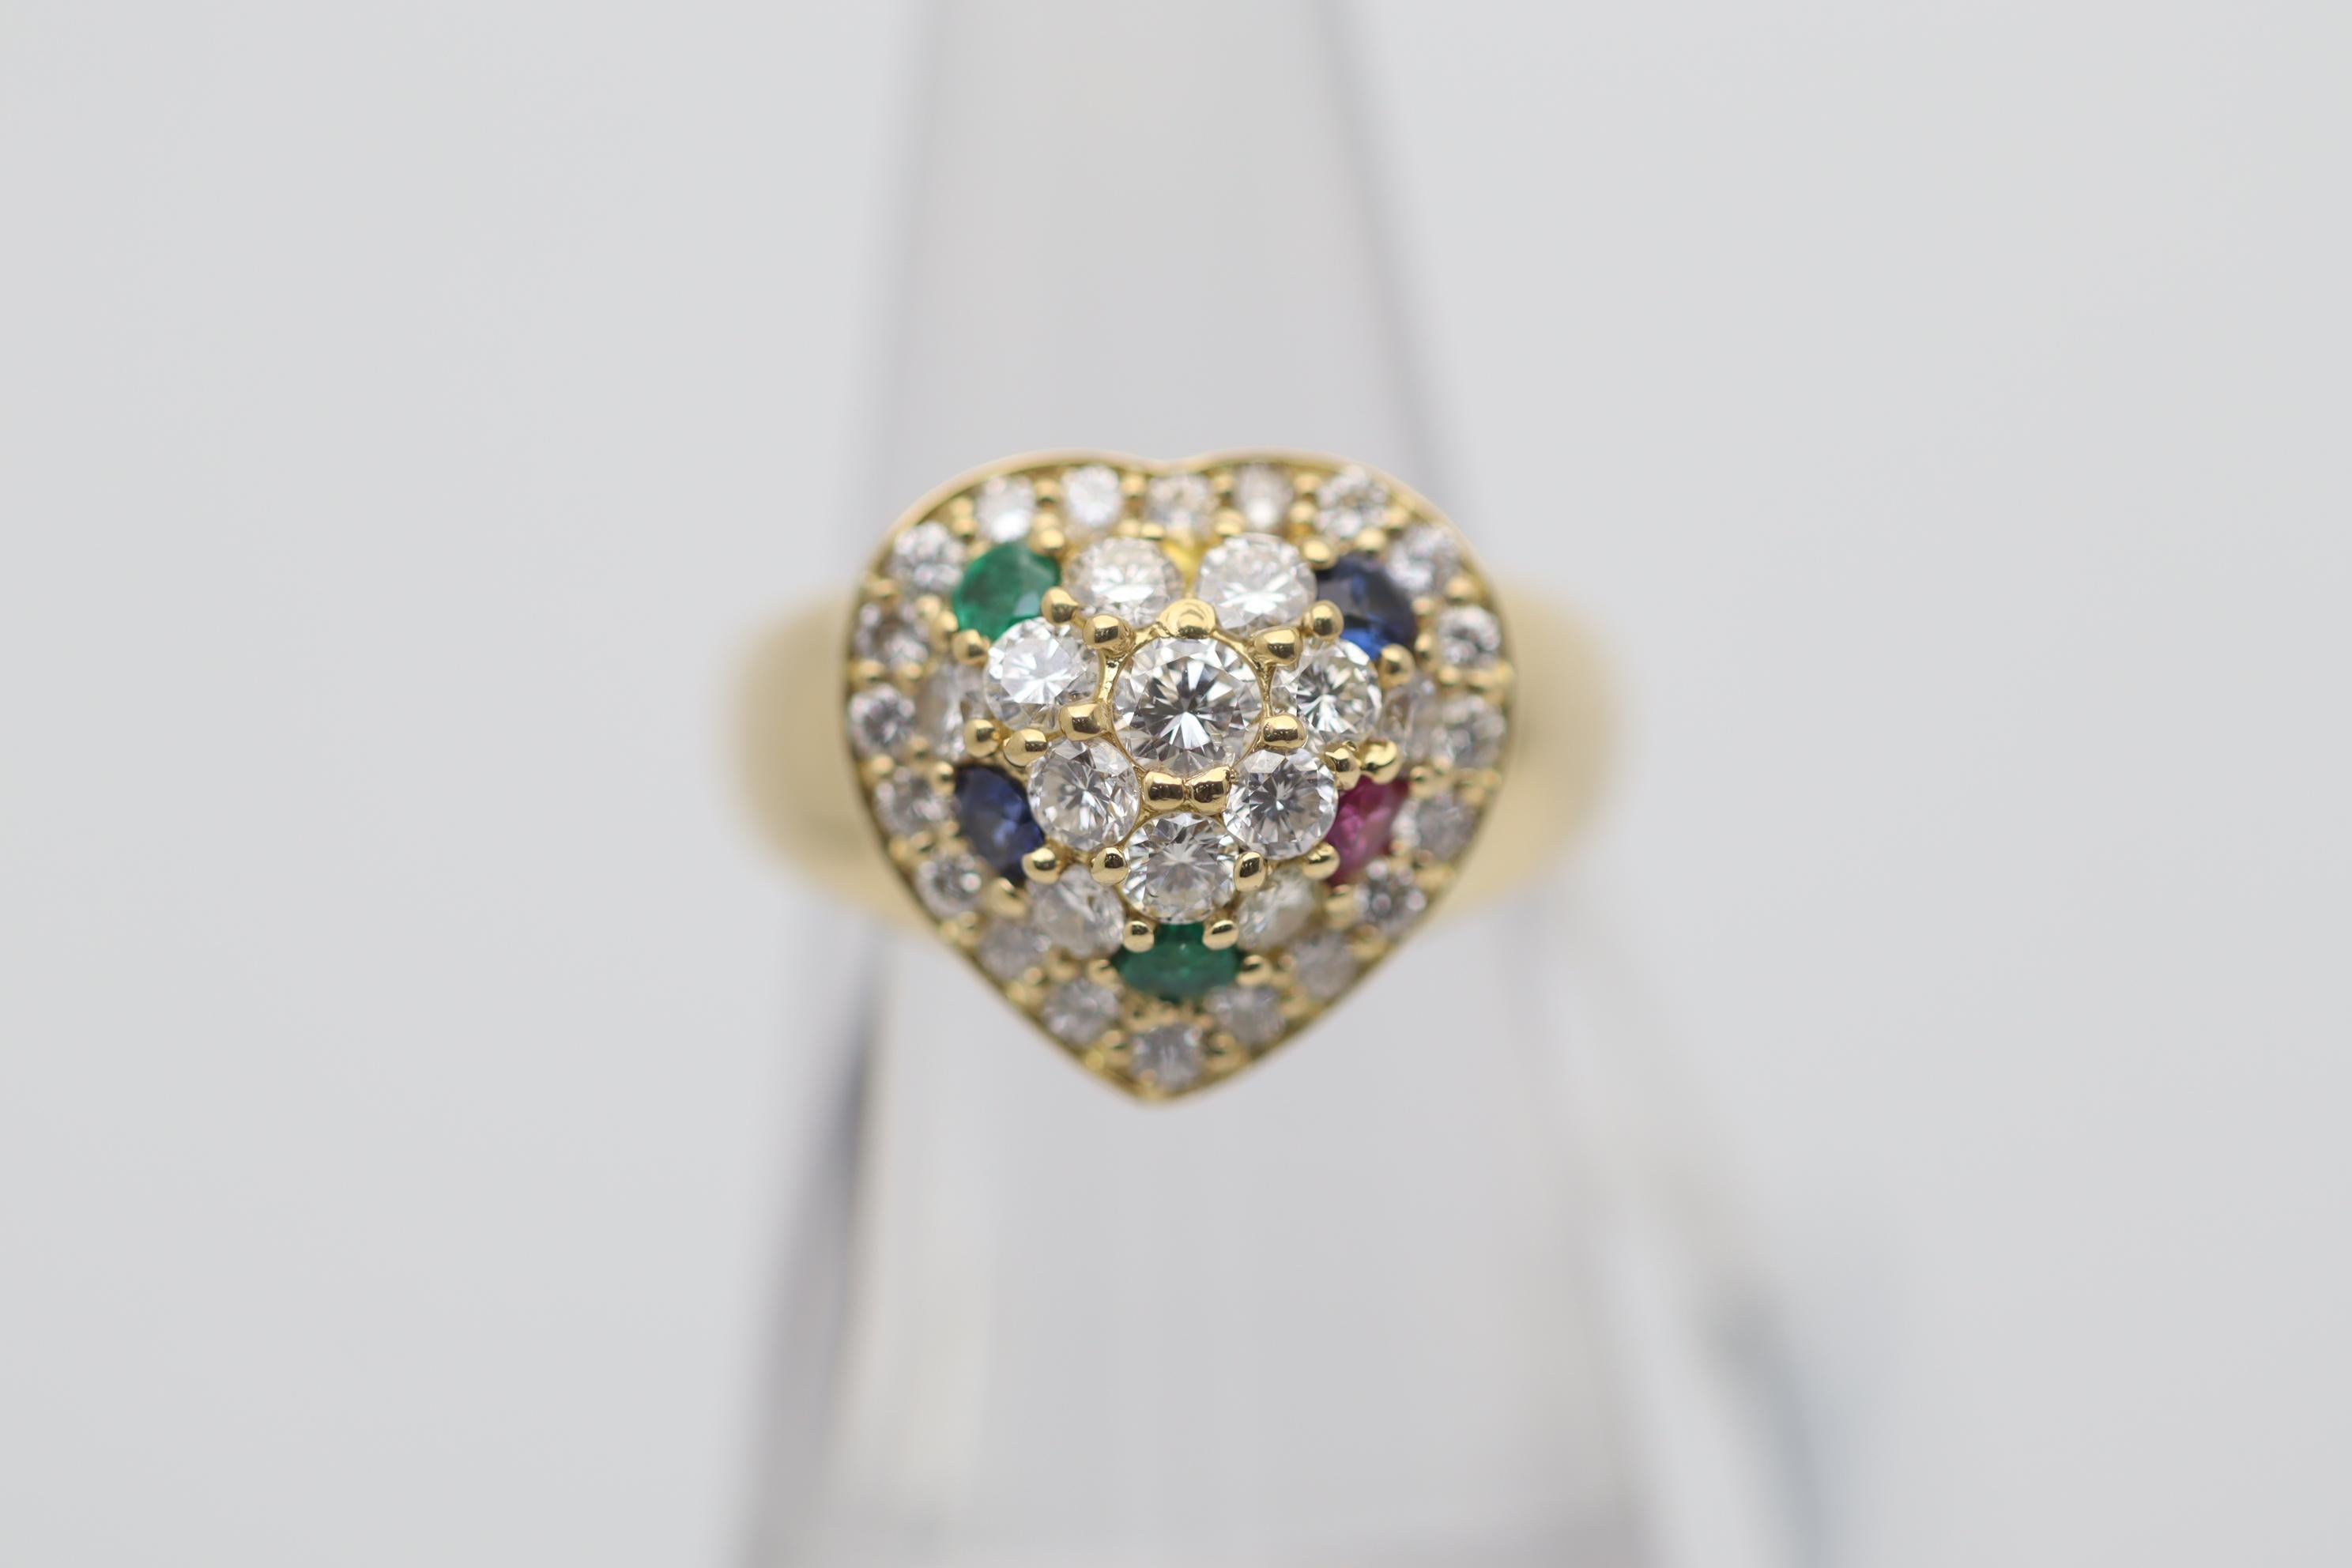 Cette bague douce et élégante est ornée d'un motif de cœur en or serti de diamants et de pierres précieuses. Le cœur est serti de 1,14 carats de diamants ronds de taille brillant ainsi que de deux émeraudes, deux saphirs et un rubis, qui ajoutent de